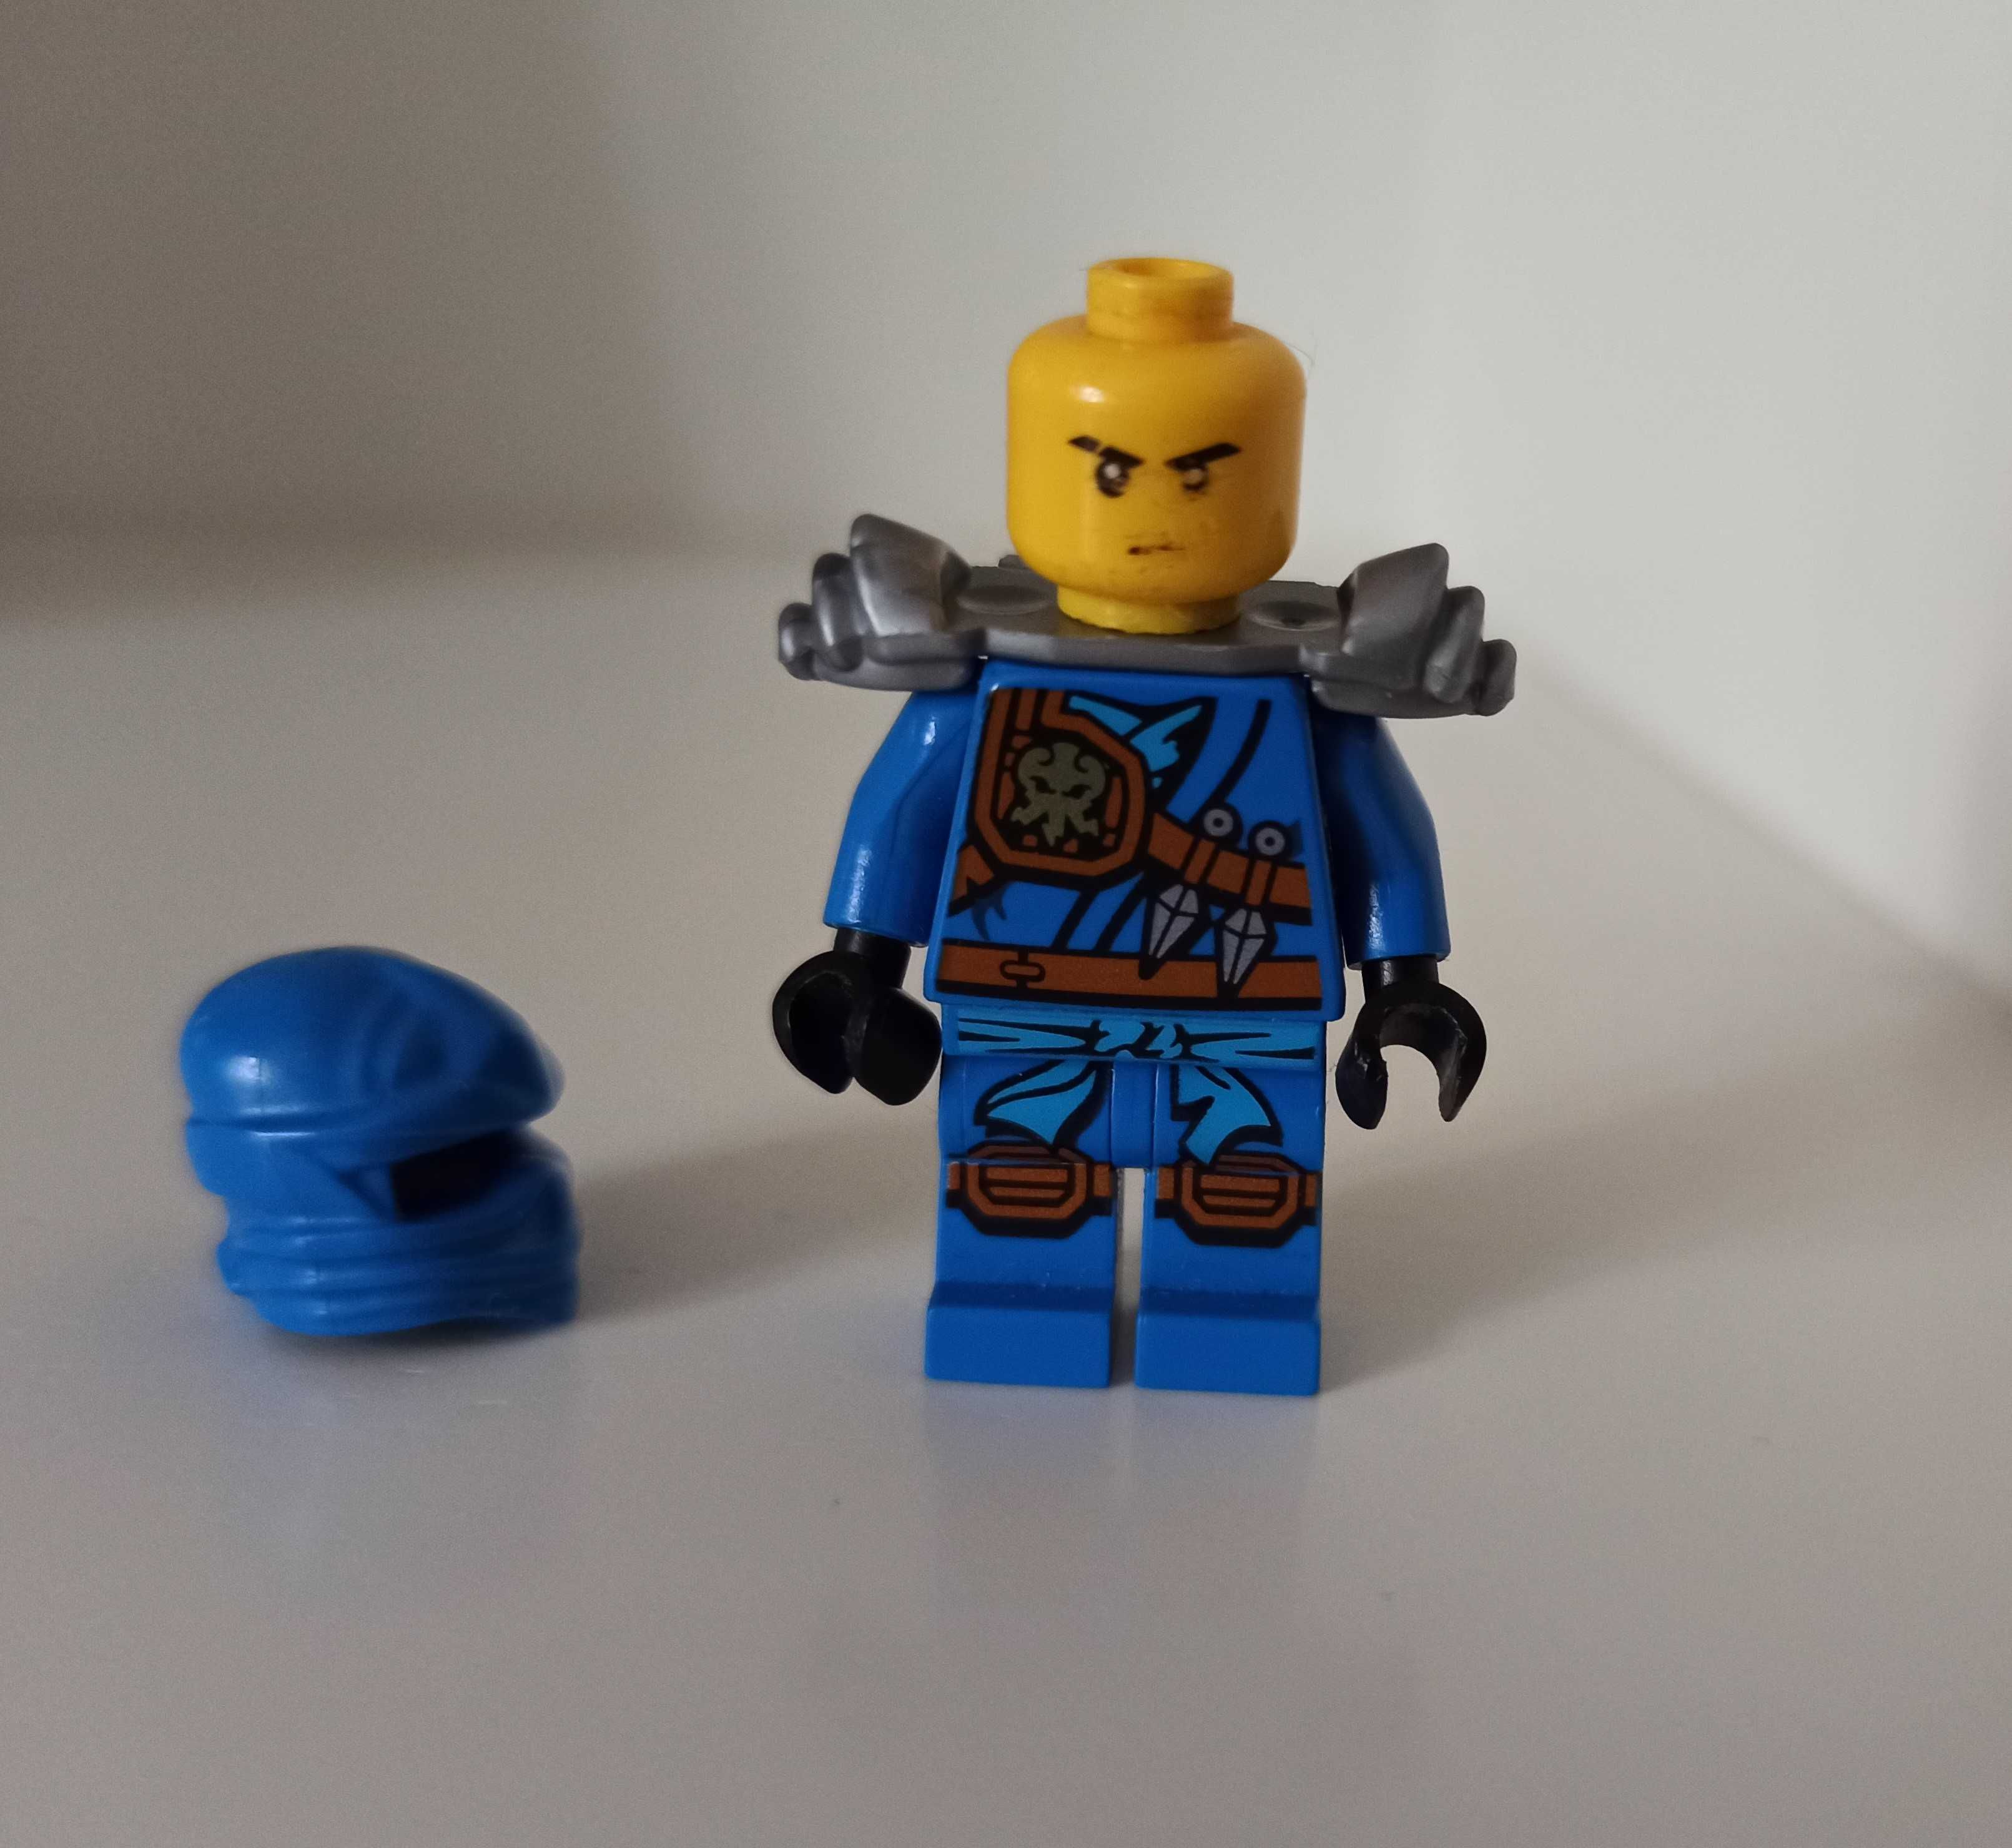 Minifigurka Lego Ninjago Jay njo216